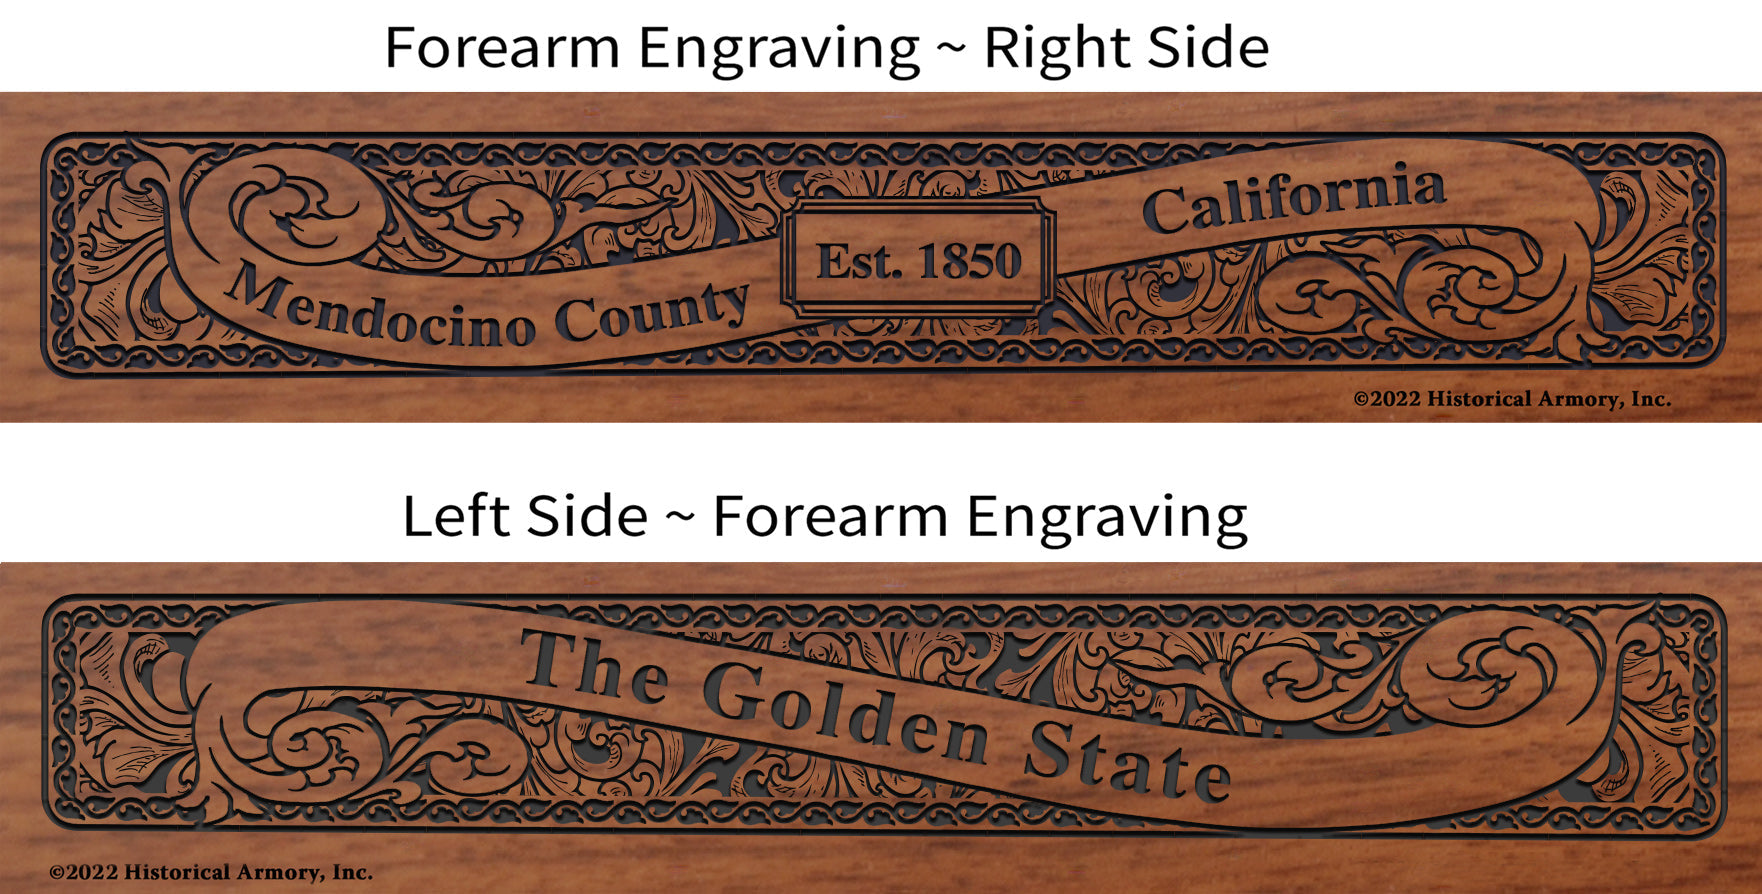 Mendocino County California Engraved Rifle Forearm